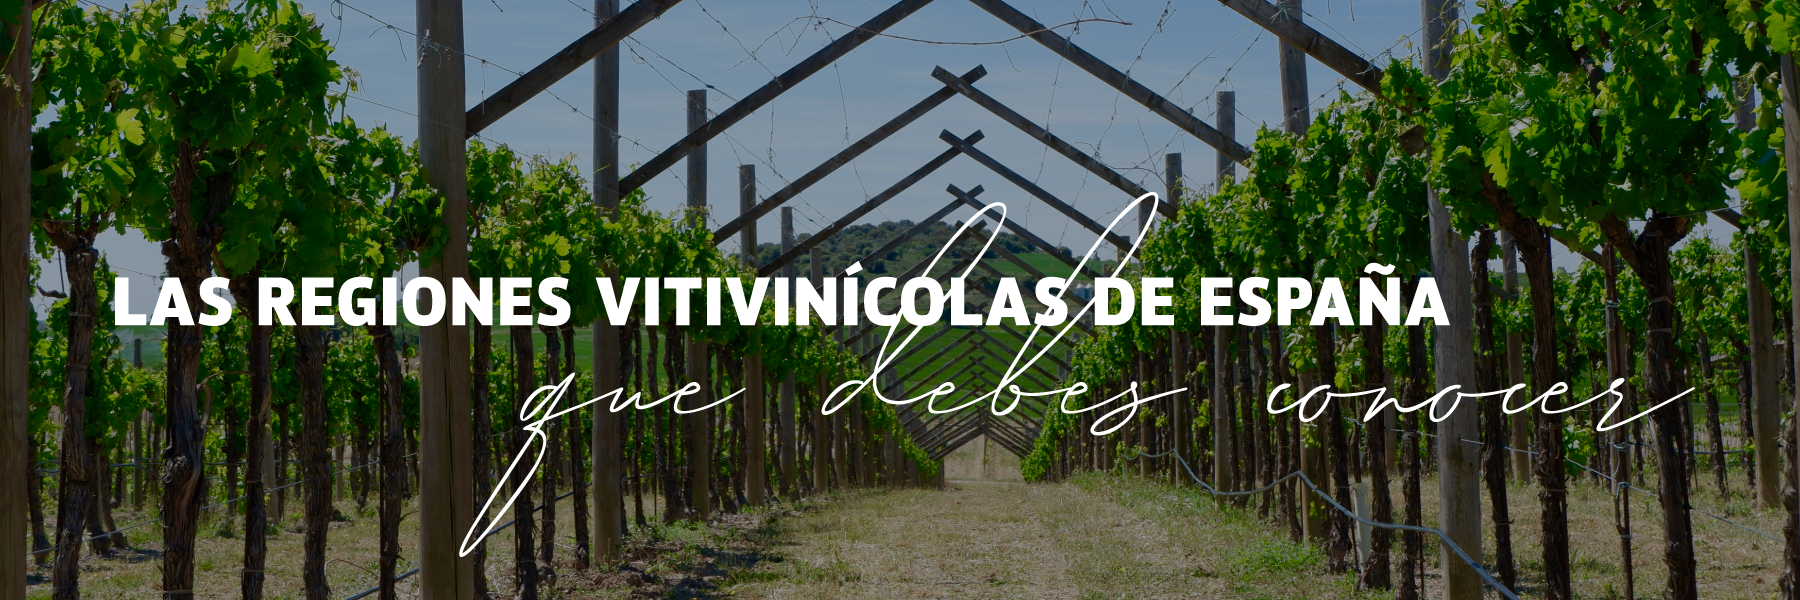 Las regiones vitivinícolas de España que debes conocer 🍇 🇪🇸